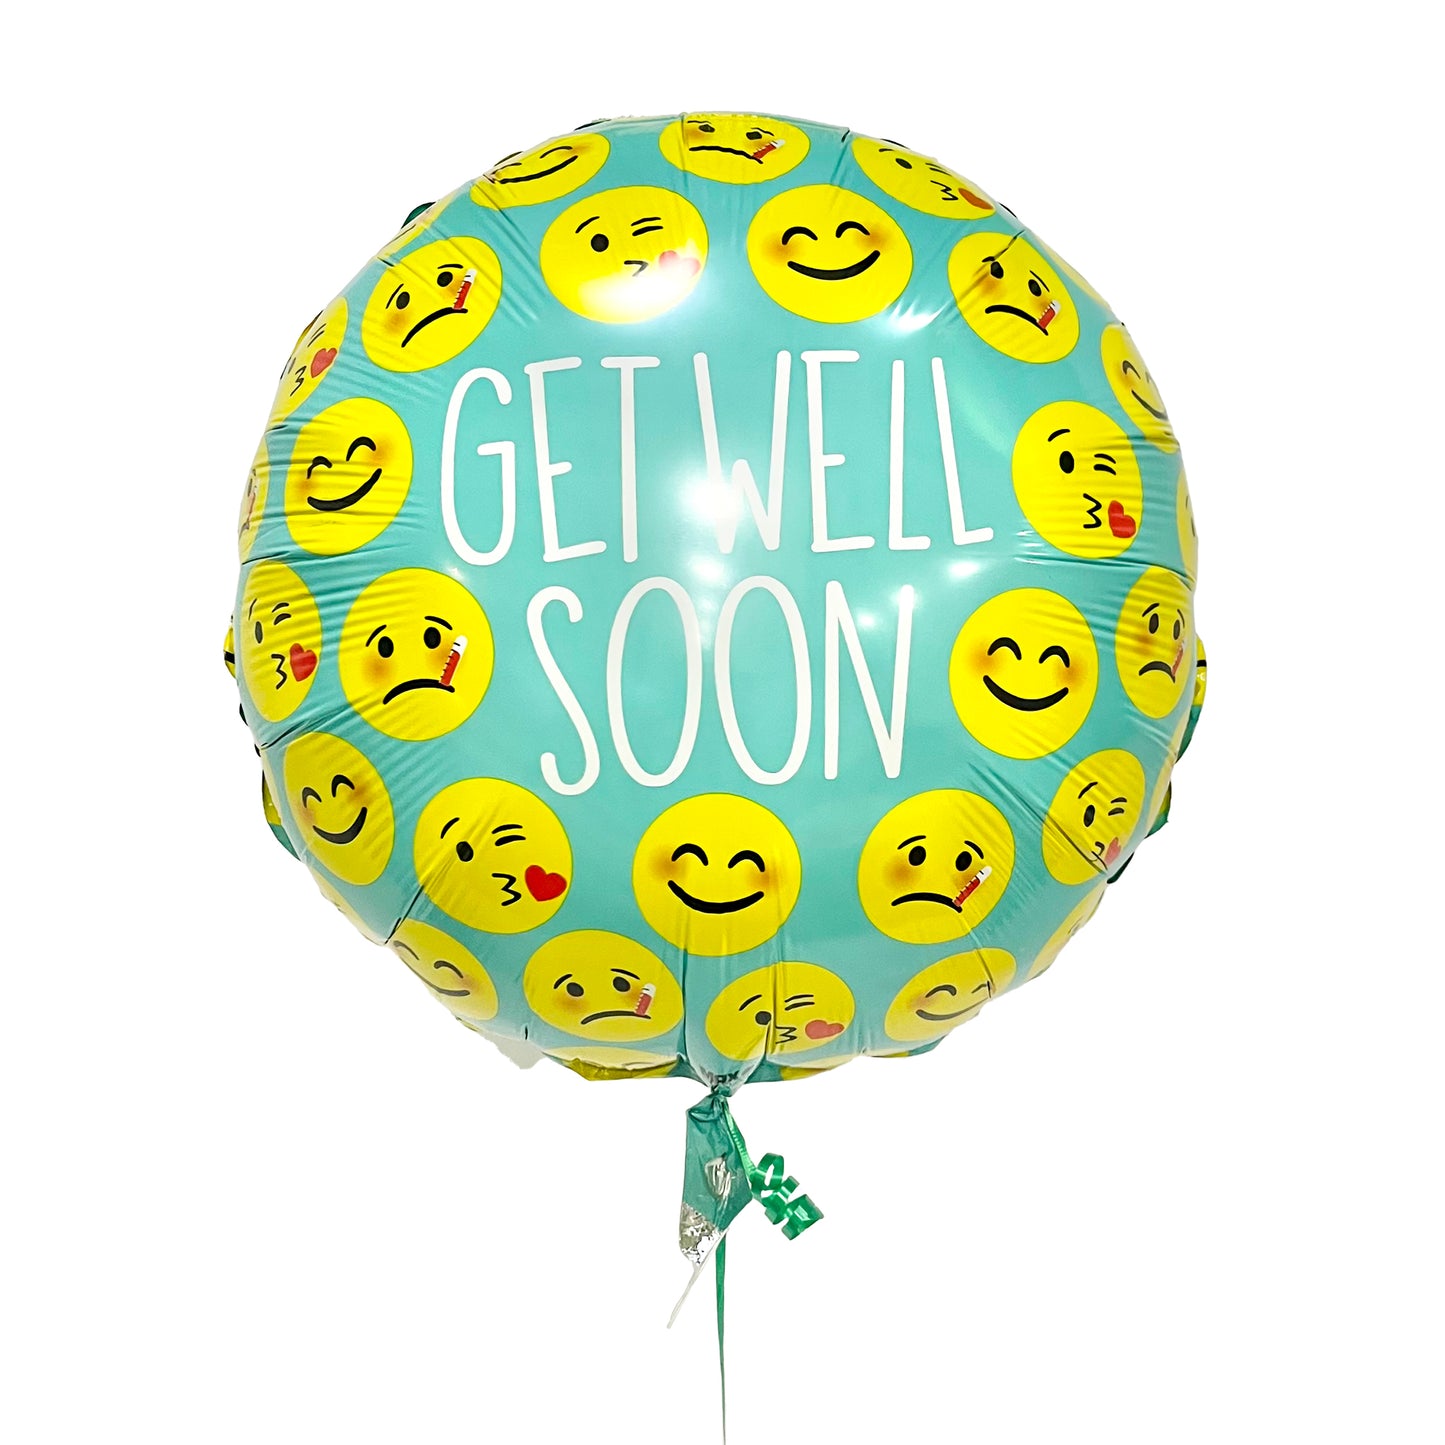 Get well soon emojis mylar balloon